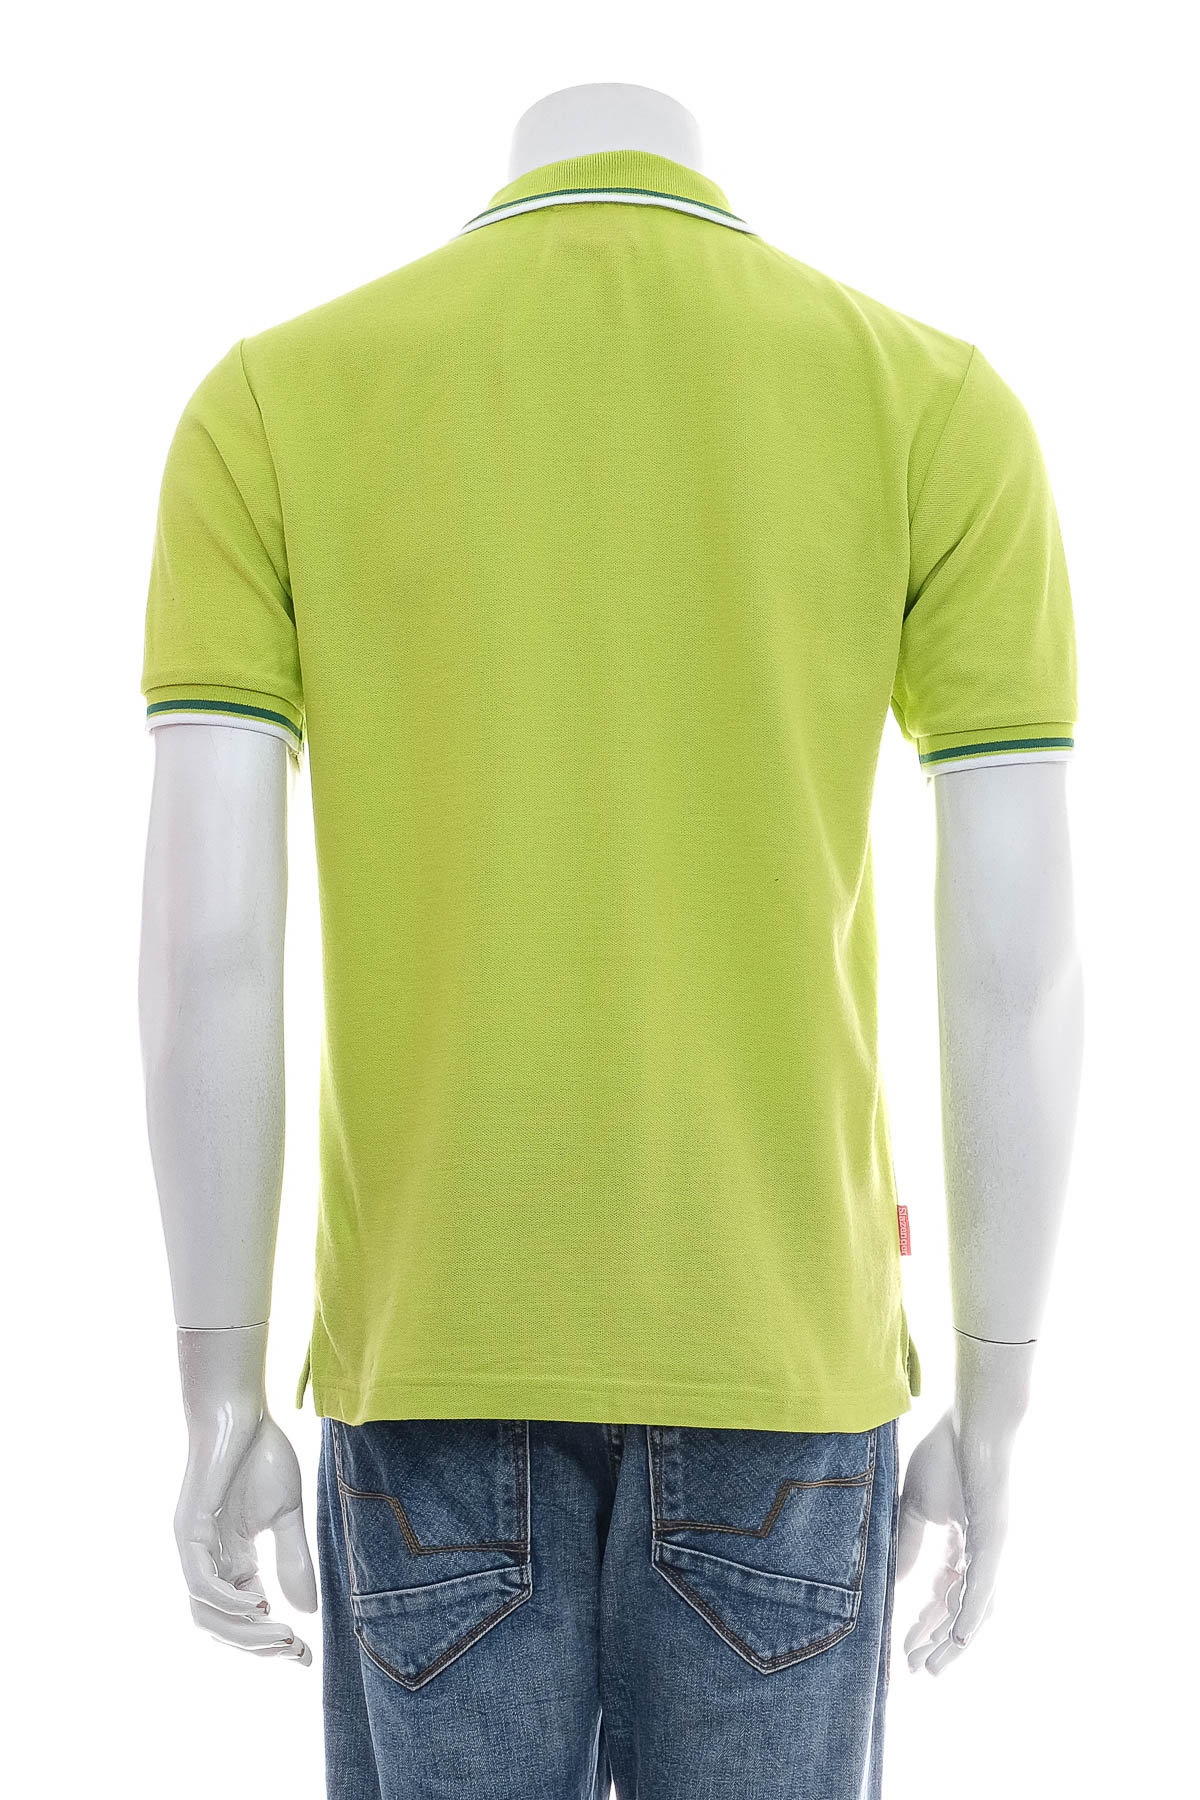 Men's T-shirt - Slazenger - 1